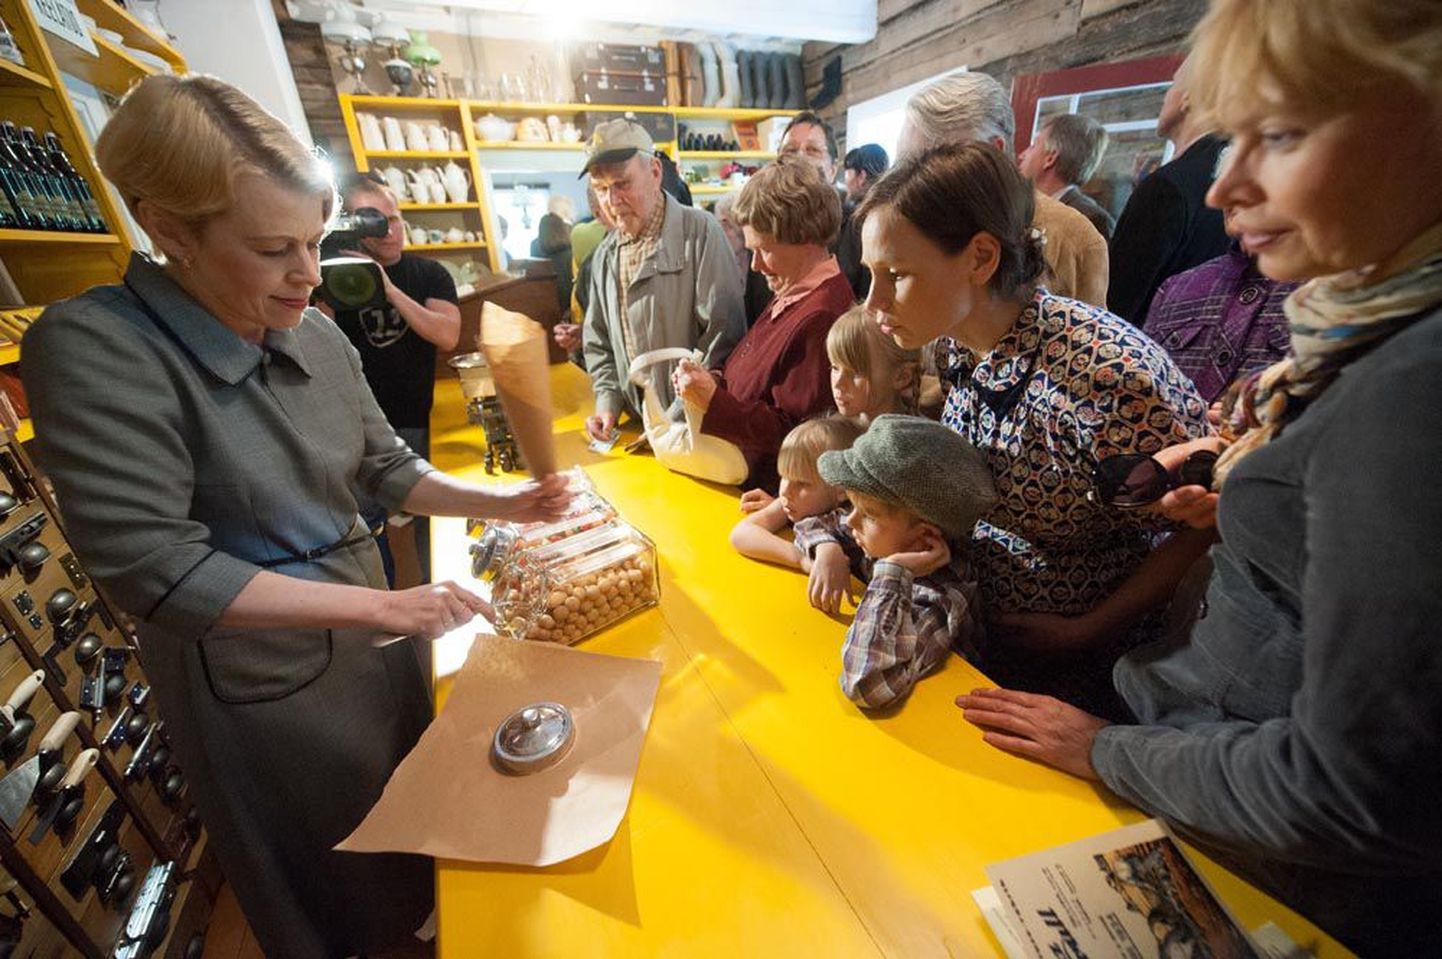 Eile 55. sünnipäeva tähistanud Eesti Vabaõhumuuseum avas tähtpäeva puhul uue eksponaathoone – Lau külapoe.